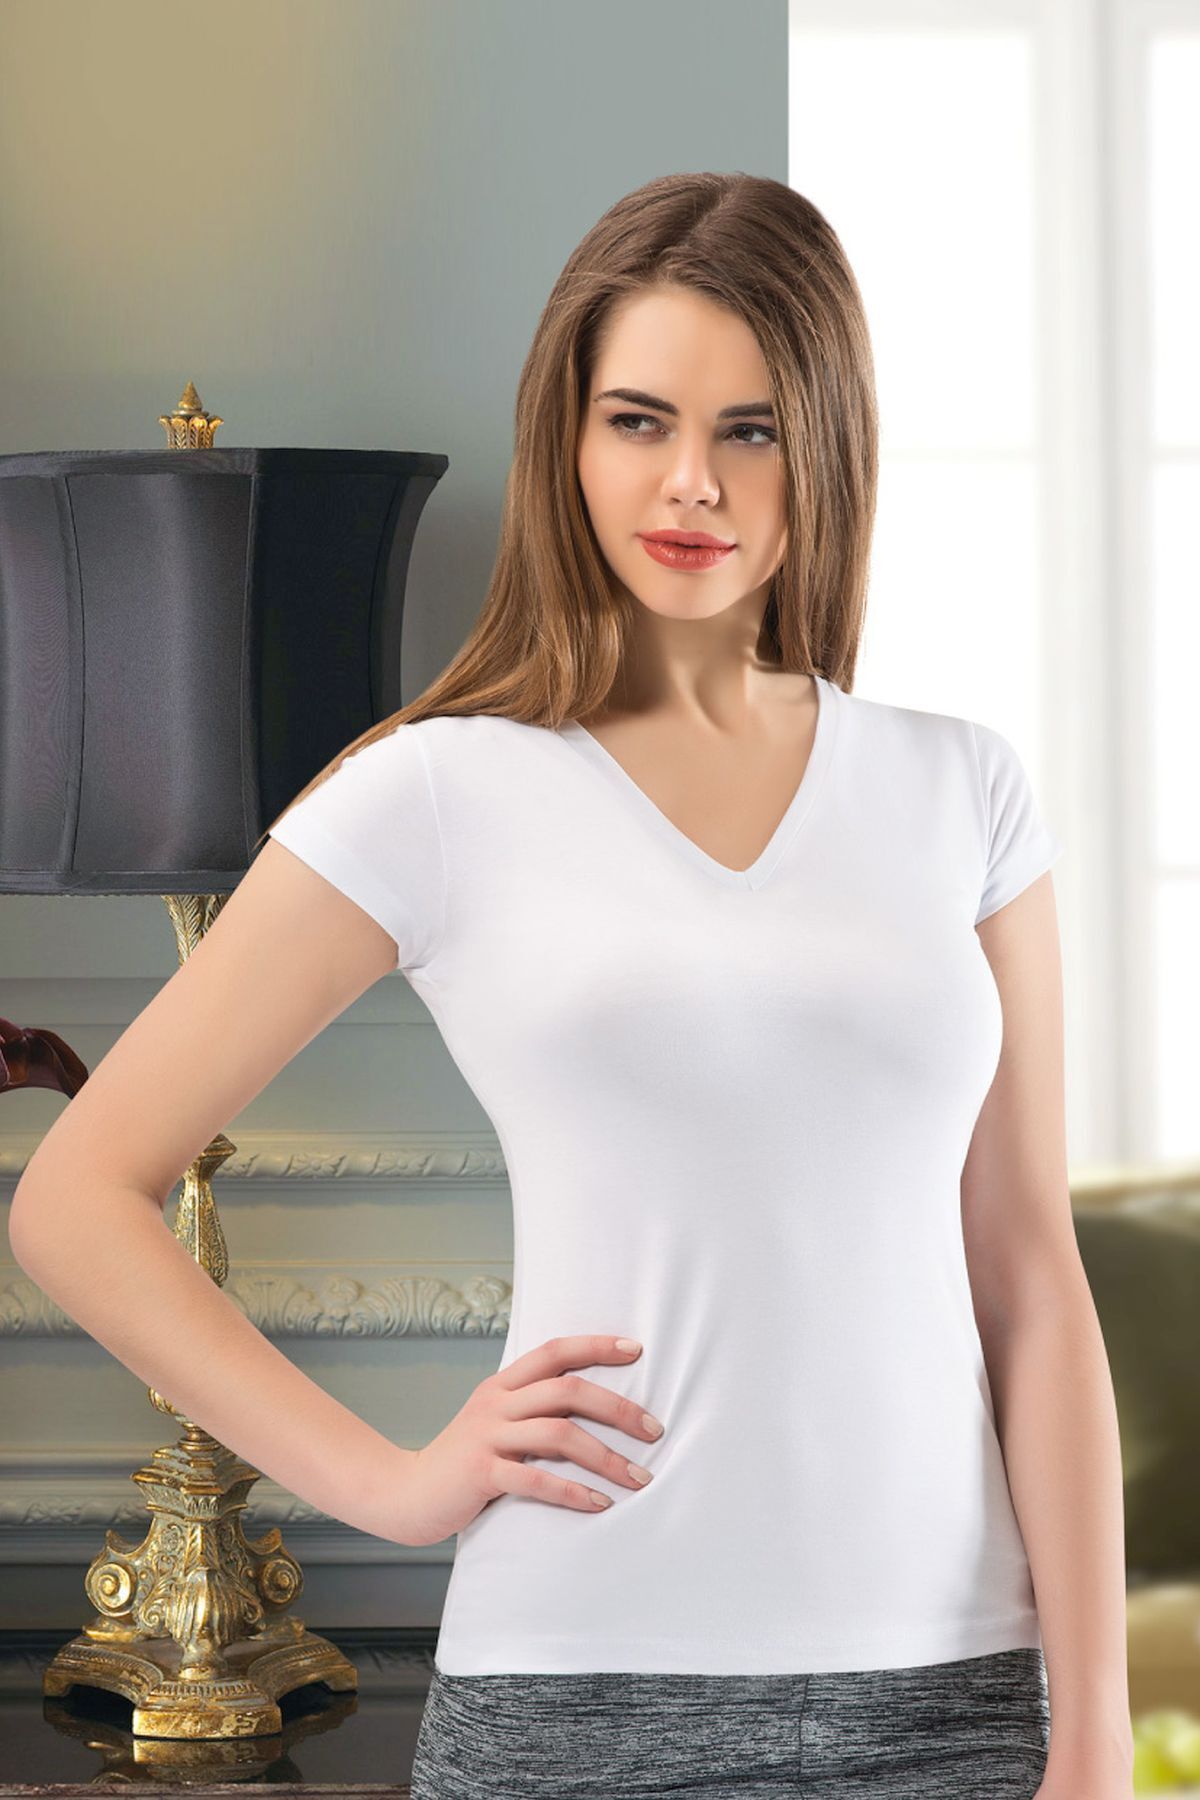 LIMEFANTASY T-Shirt Üzeri Kadın Kemer, Şık Deri Kadın Kemer, Elbise Üzeri Kemer - APFT1093